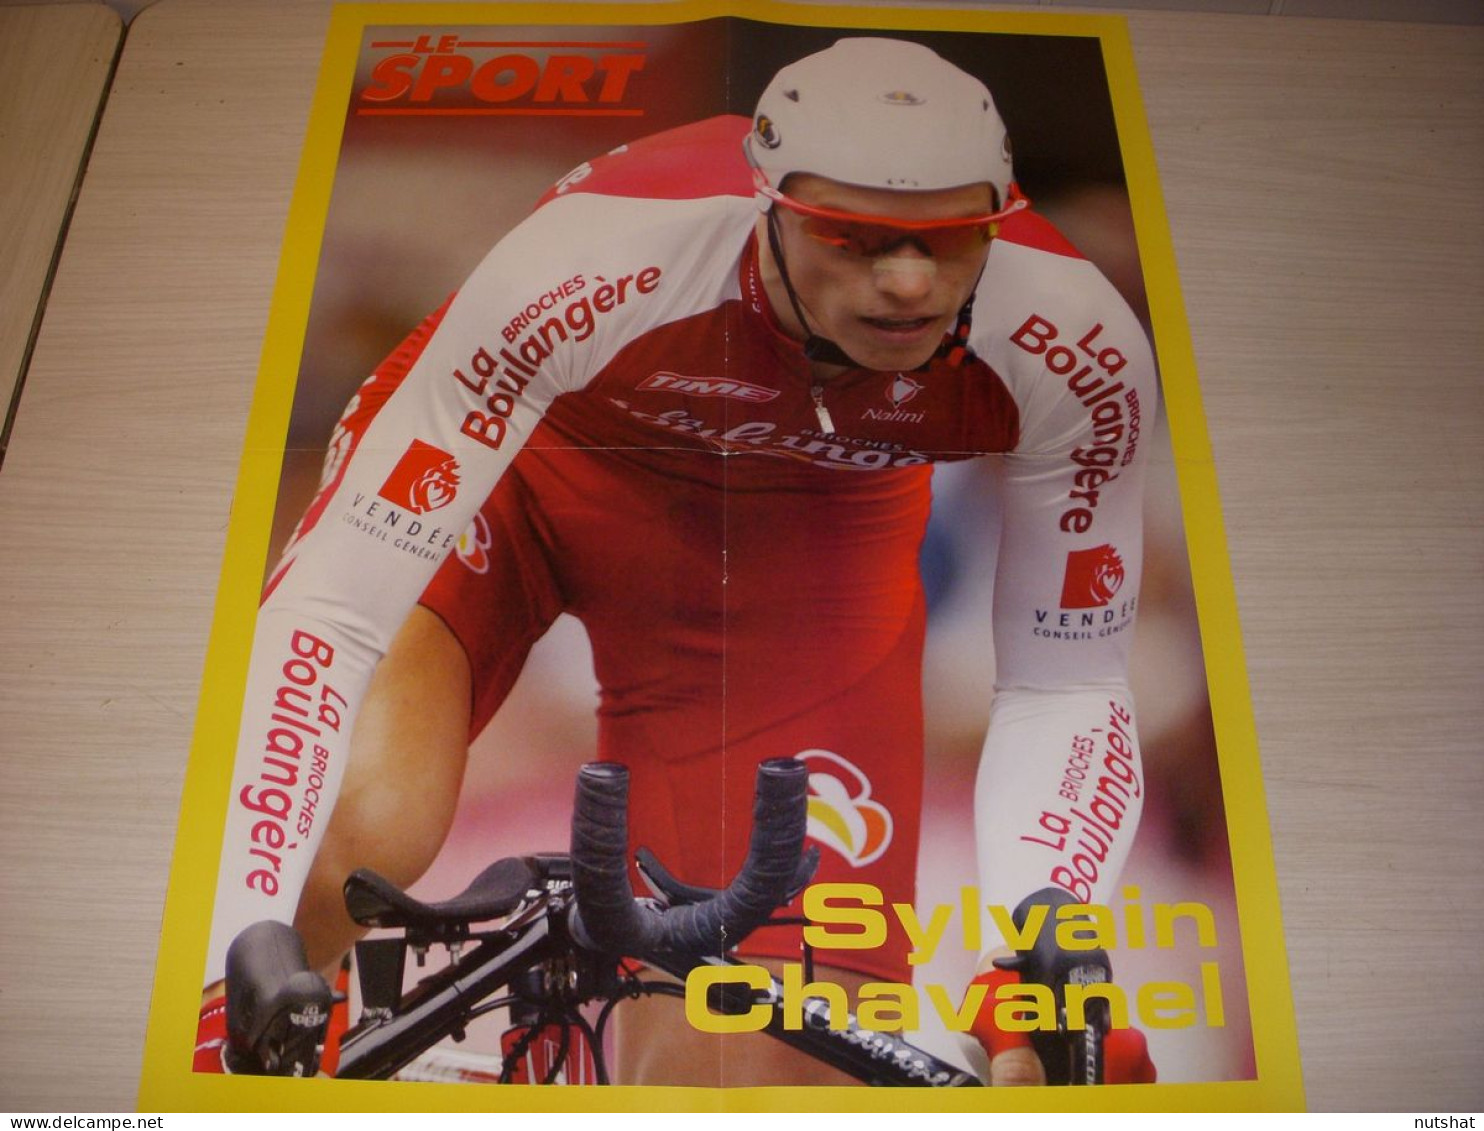 CYCLISME POSTER CHAVANEL BRIOCHES La BOULANGERE Au Dos ARMSTRONG MAILLOT JAUNE - Sport